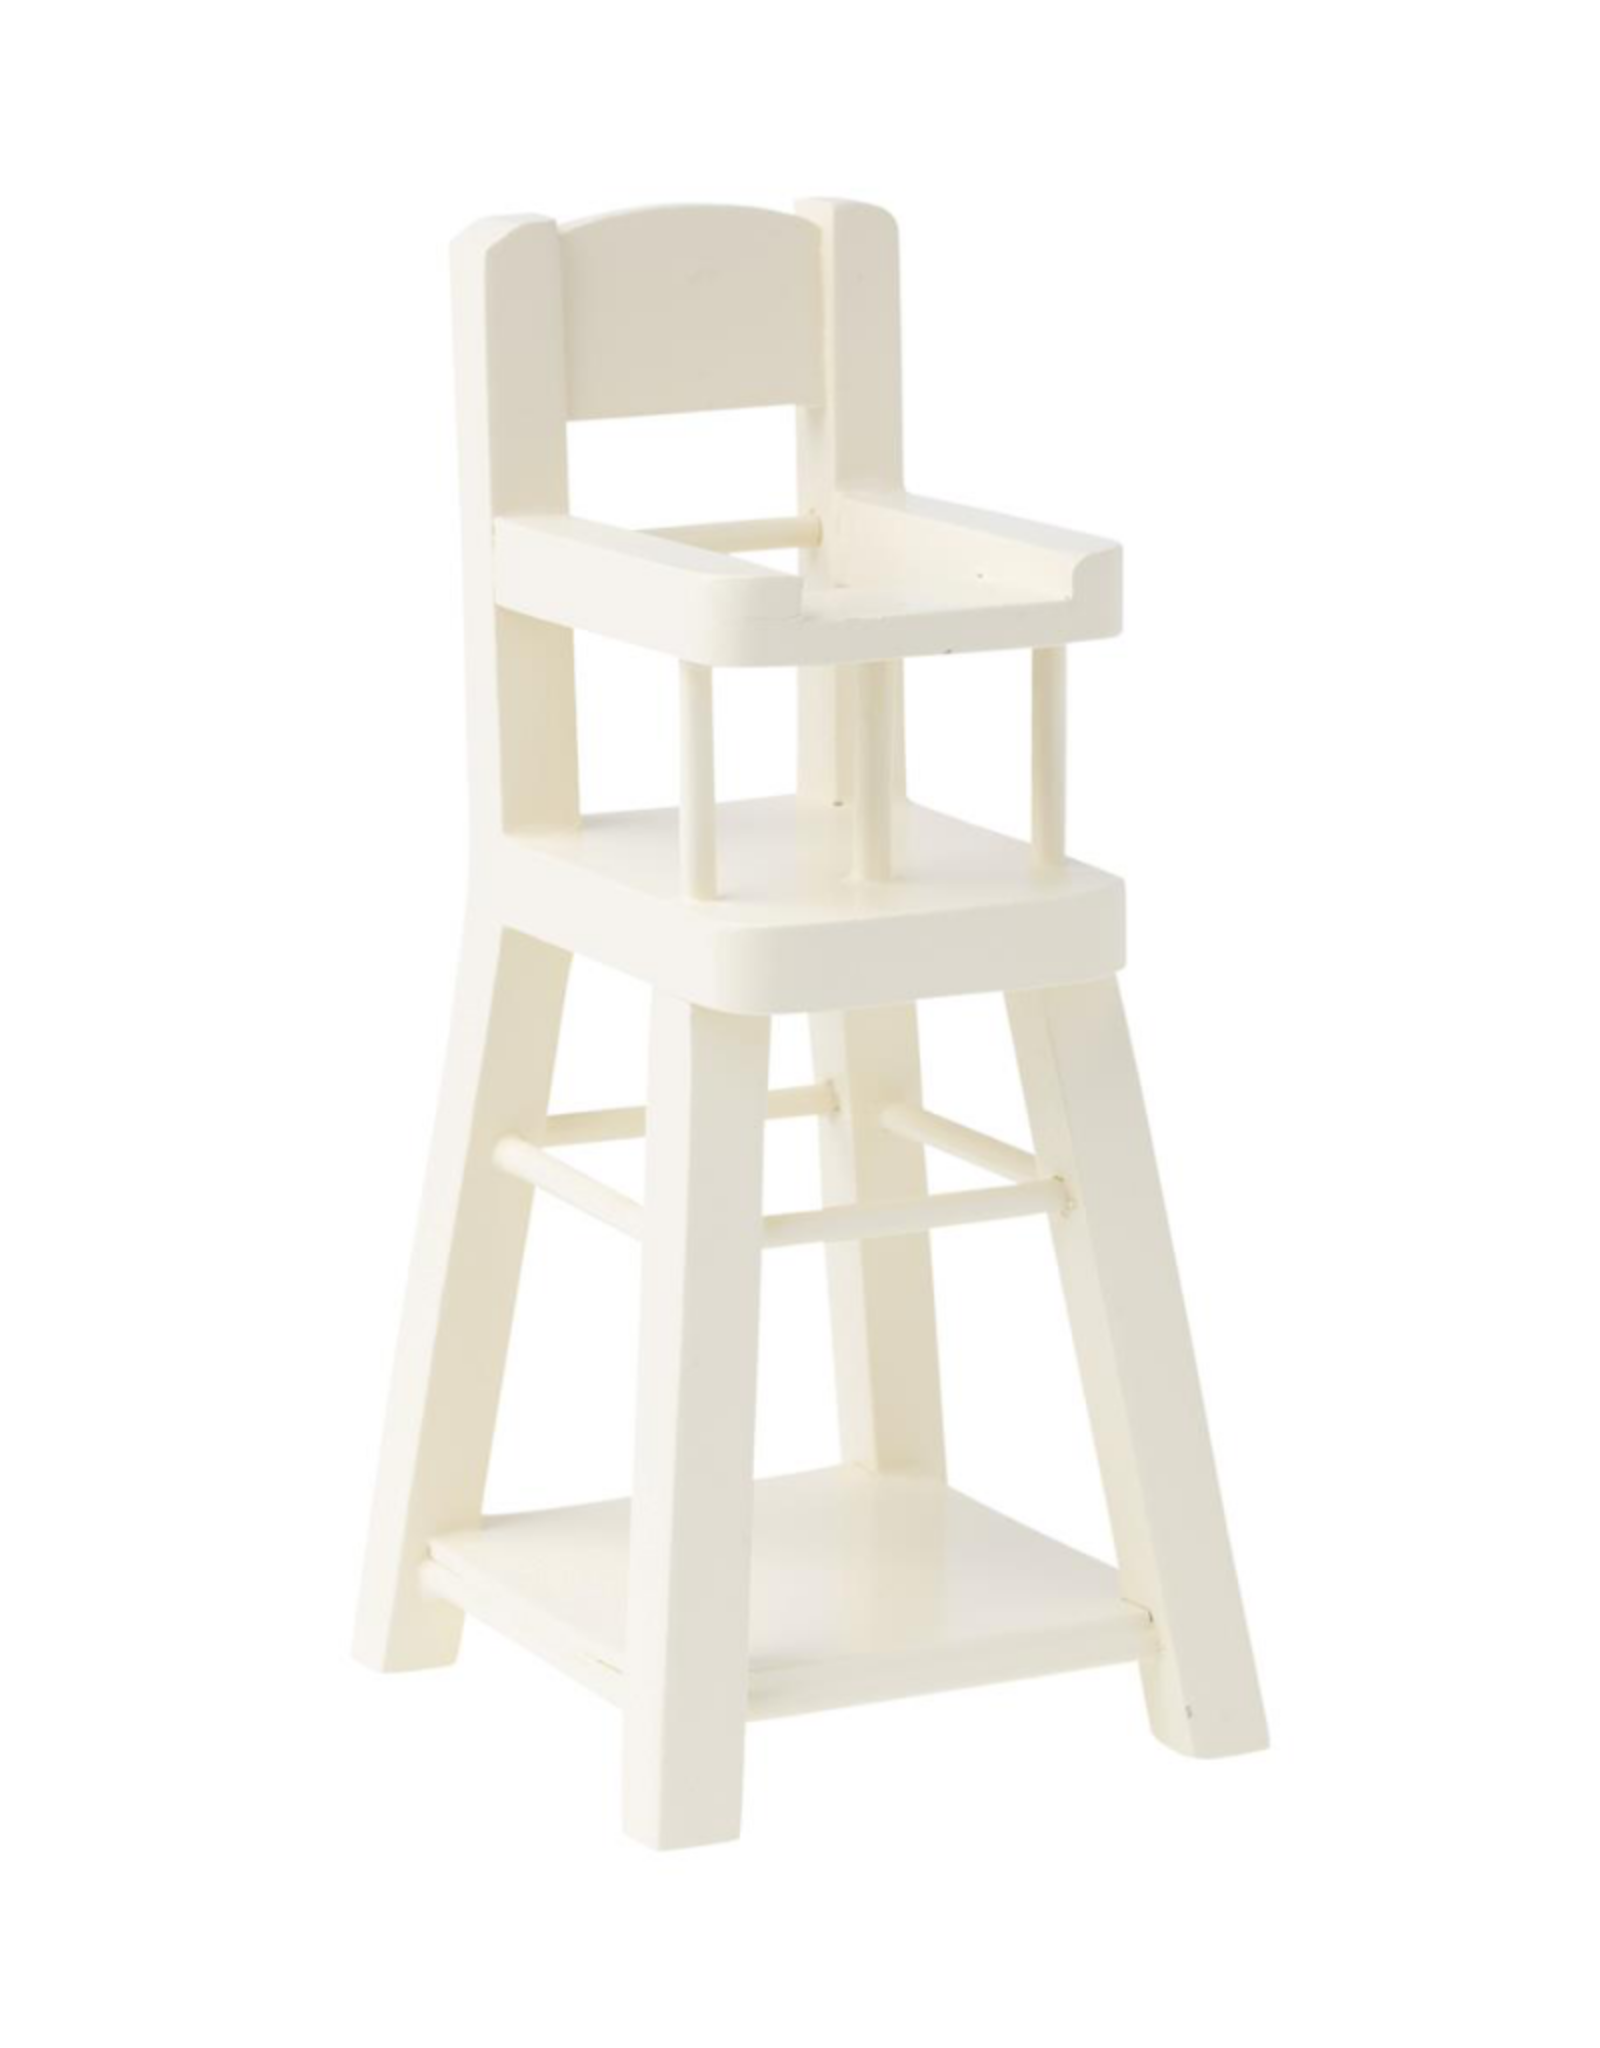 High Chair, Micro - White